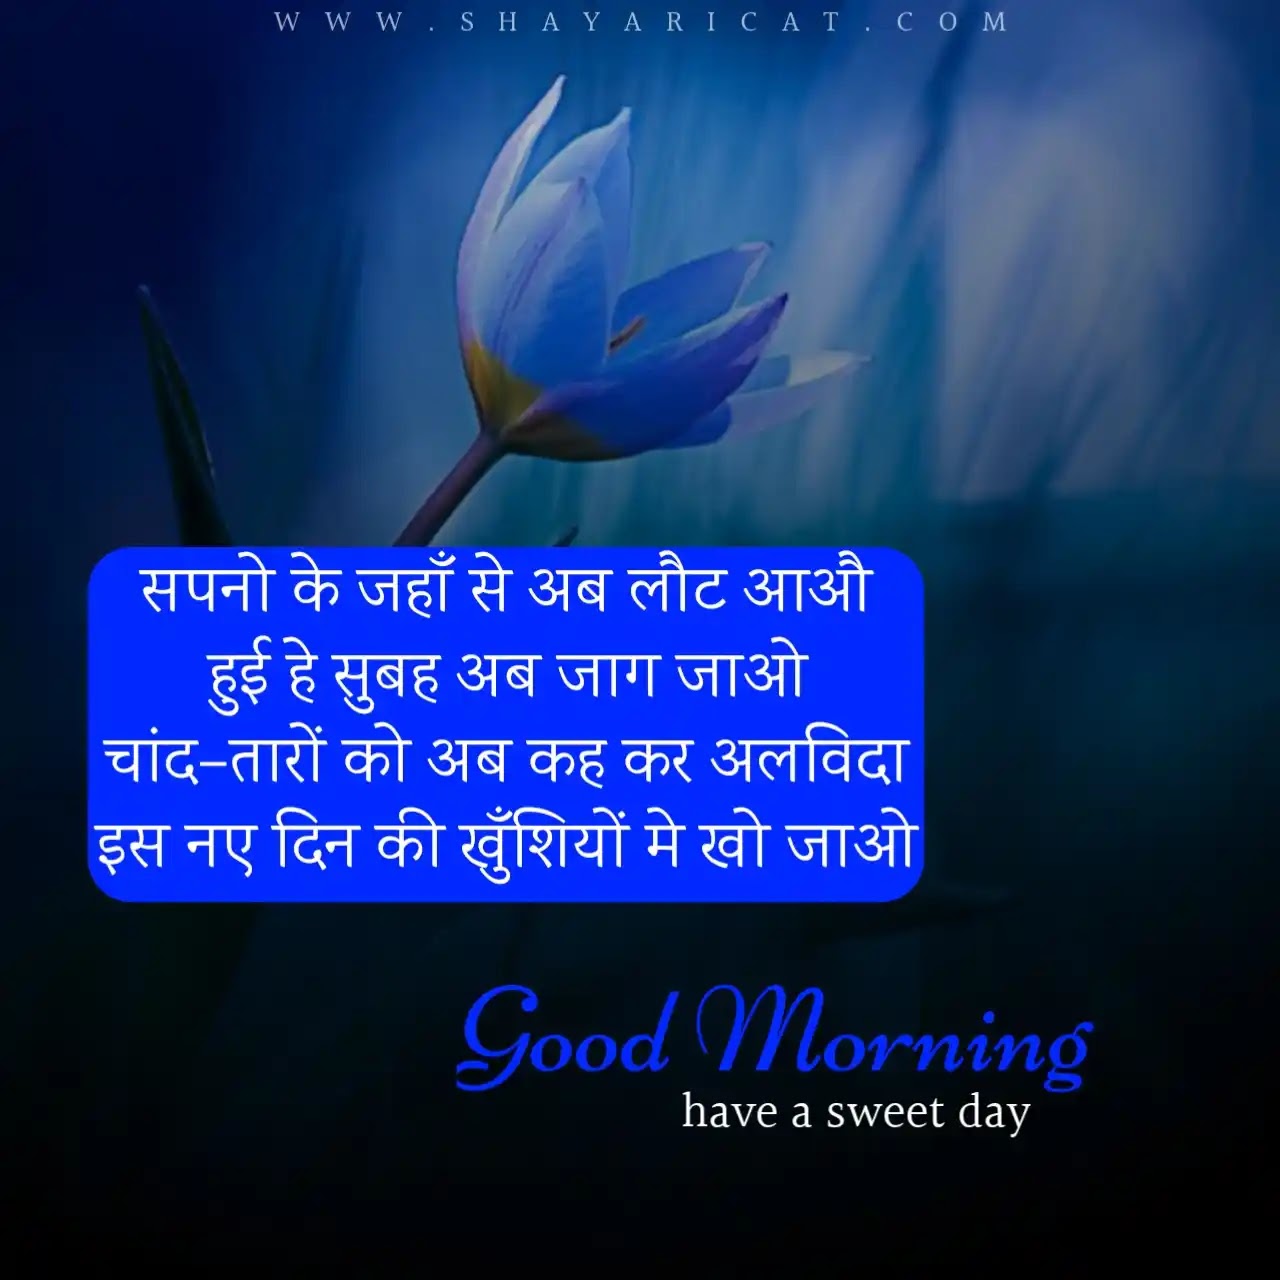 Good Morning Shayari in Hindi | गुड मॉर्निंग शायरी ...